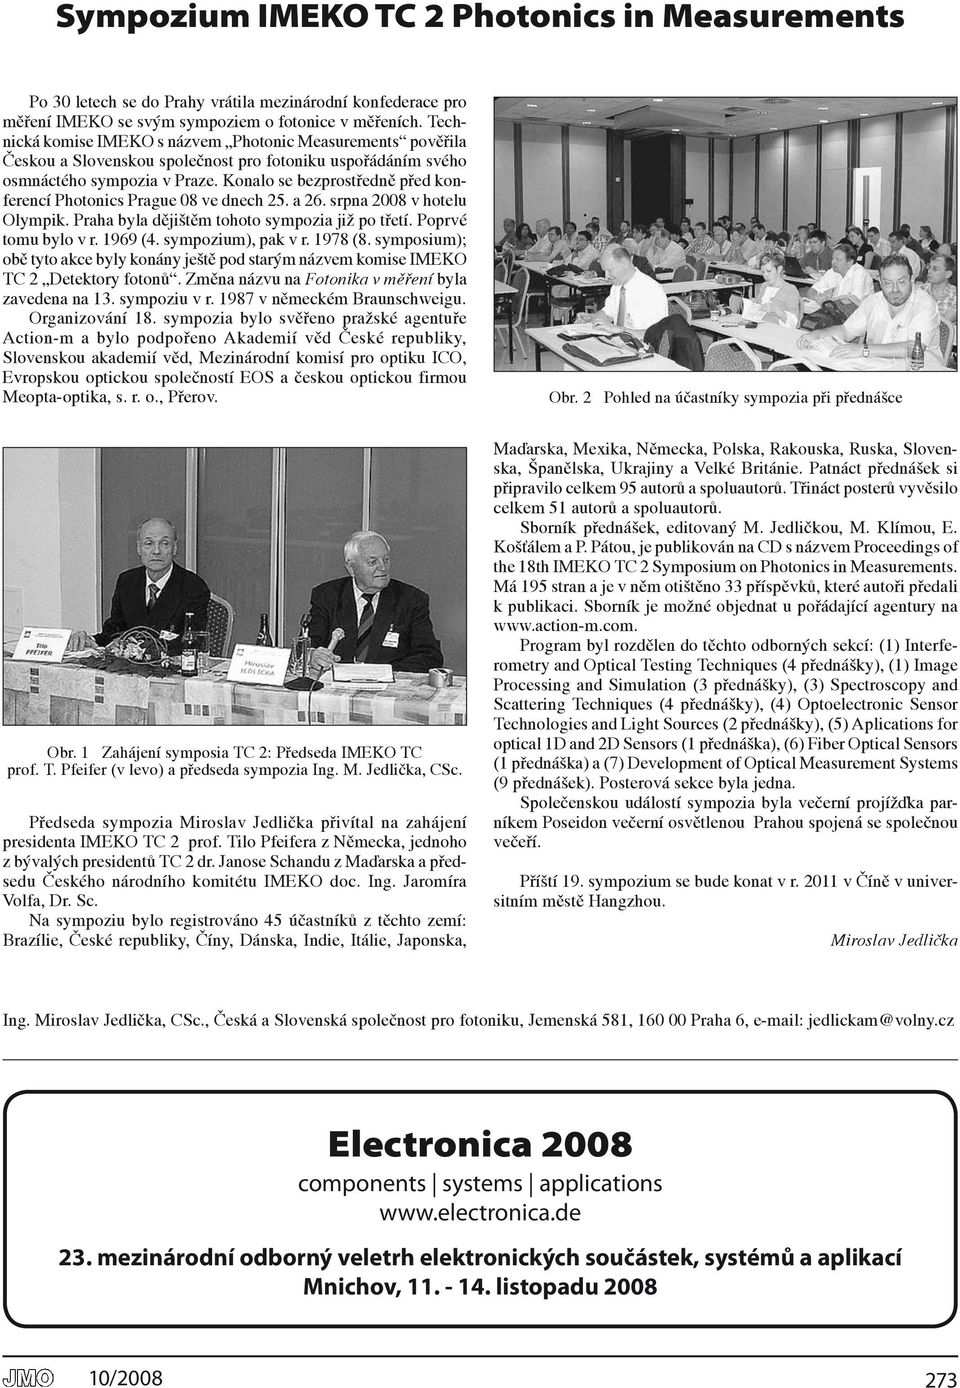 Konalo se bezprostředně před konferencí Photonics Prague 08 ve dnech 25. a 26. srpna 2008 v hotelu Olympik. Praha byla dějištěm tohoto sympozia již po třetí. Poprvé tomu bylo v r. 1969 (4.